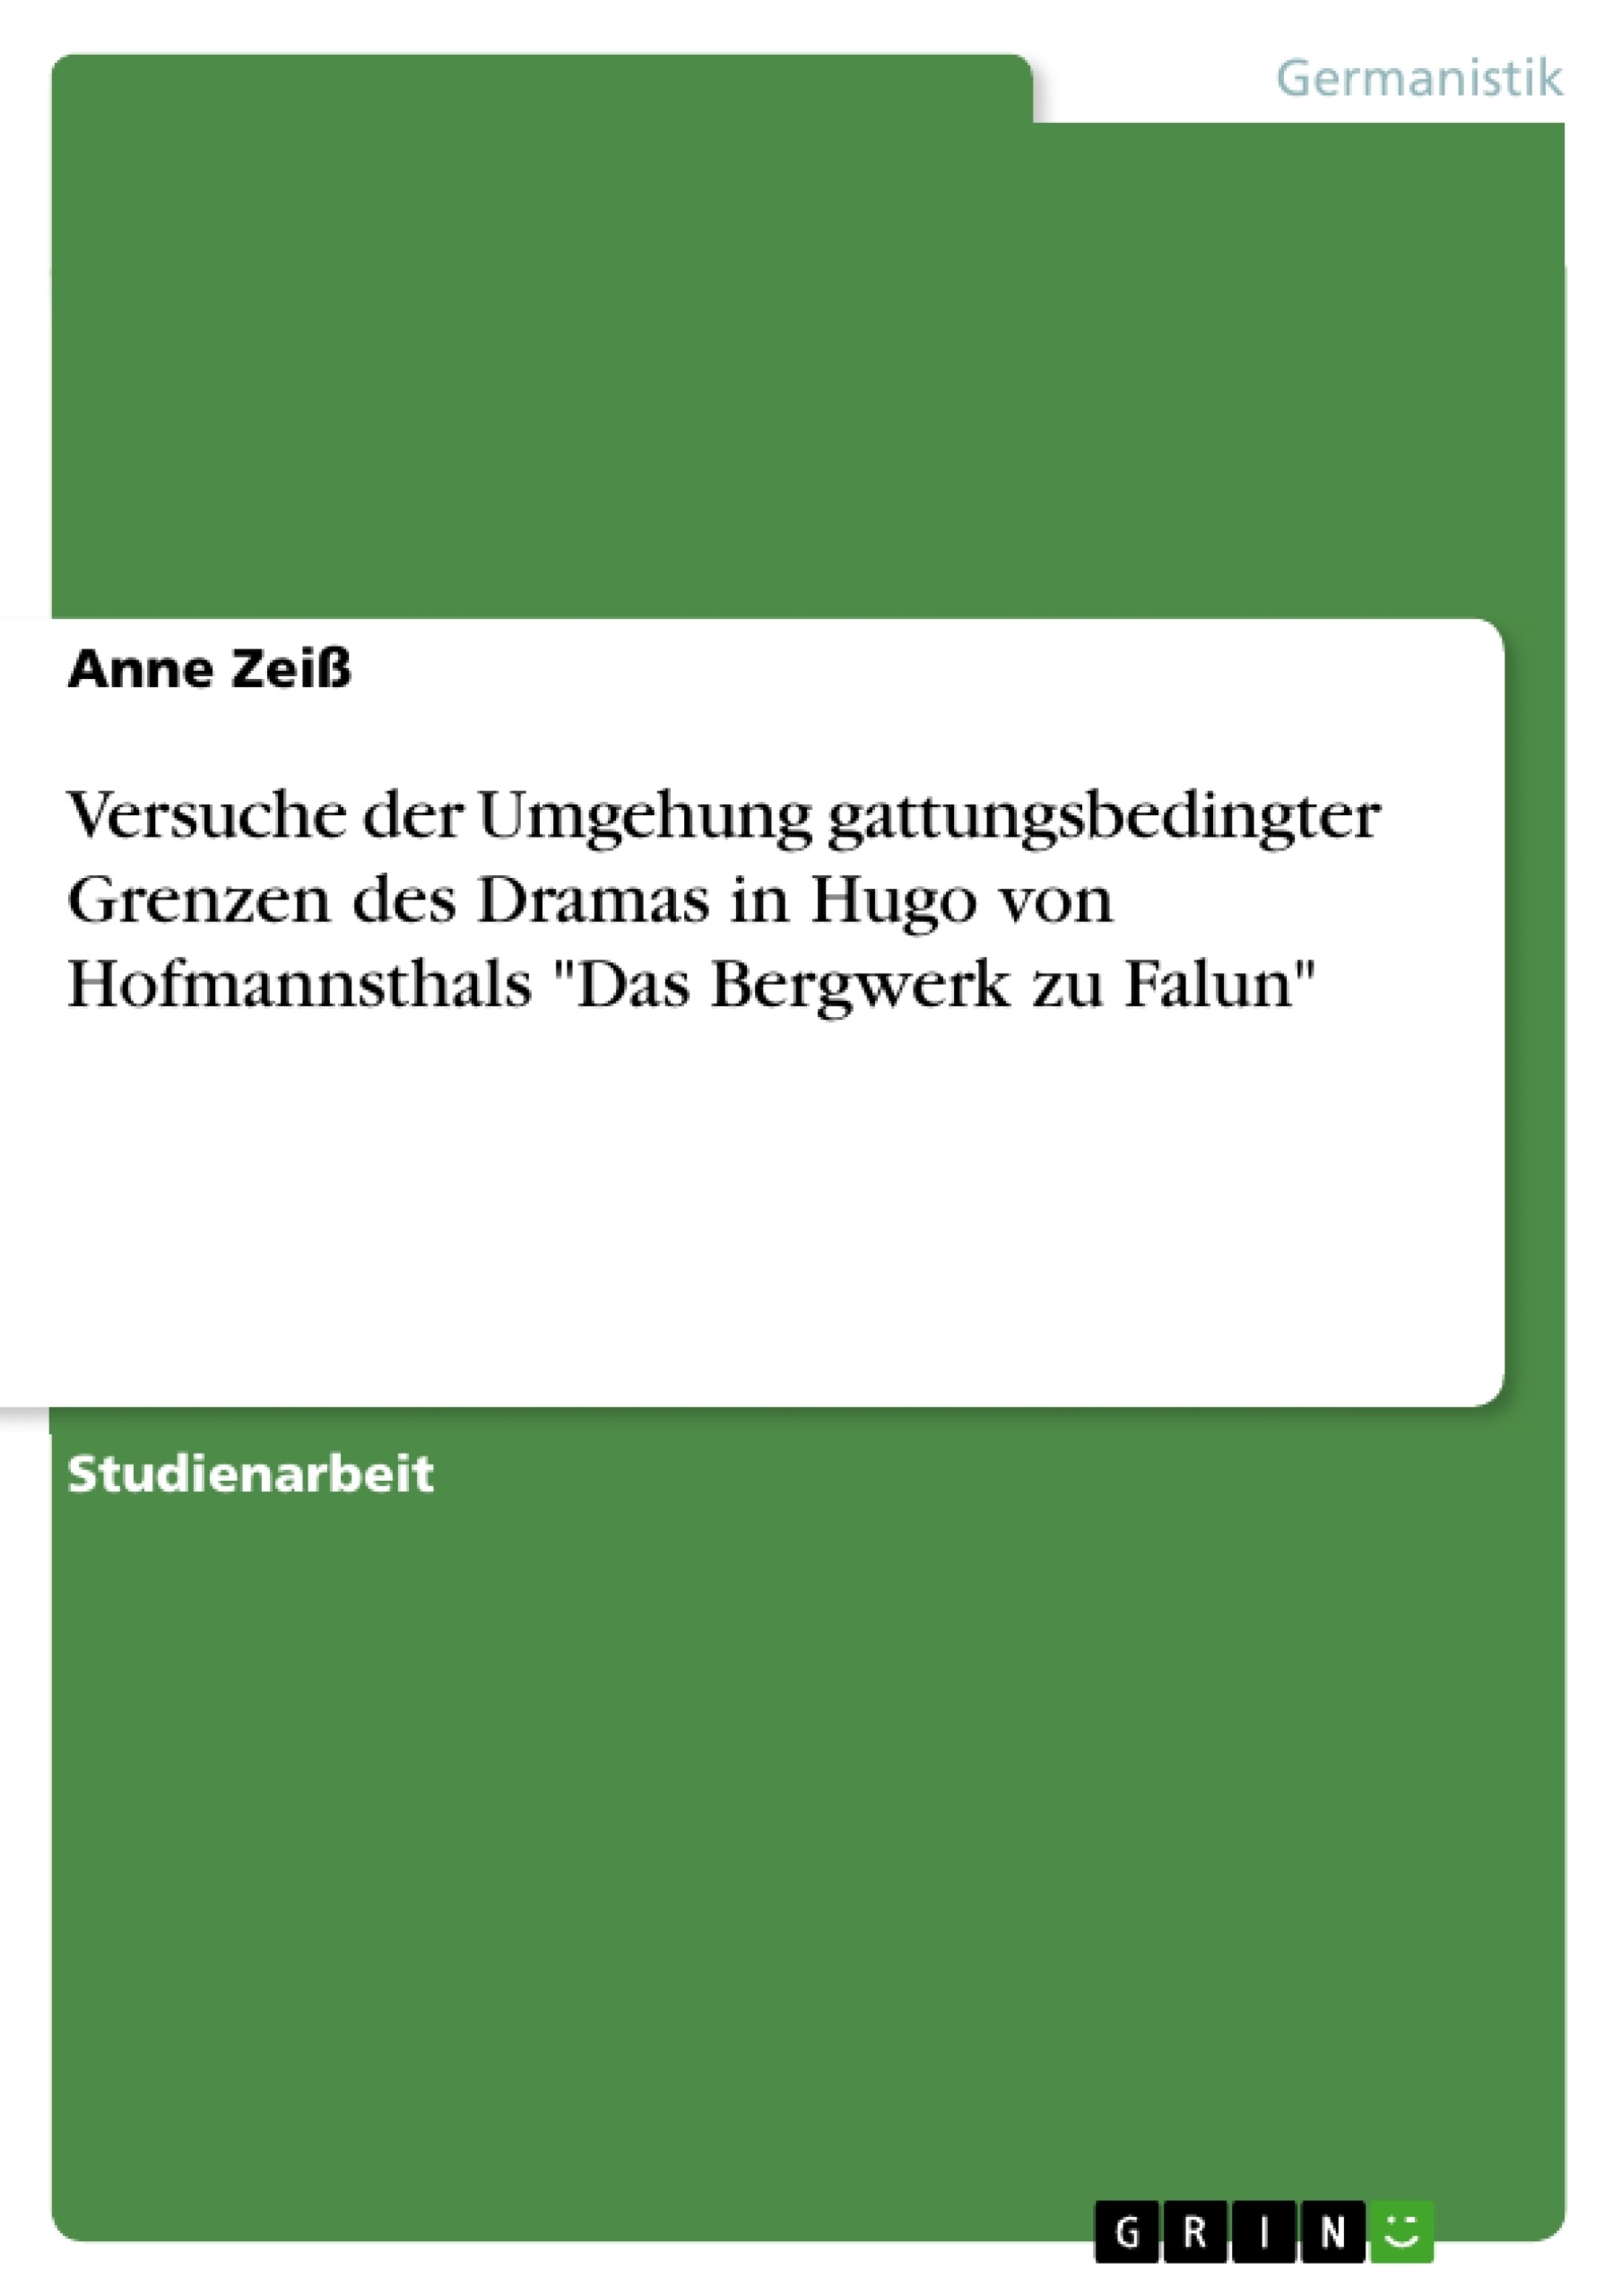 Título: Versuche der Umgehung gattungsbedingter Grenzen des Dramas in Hugo von Hofmannsthals "Das Bergwerk zu Falun"